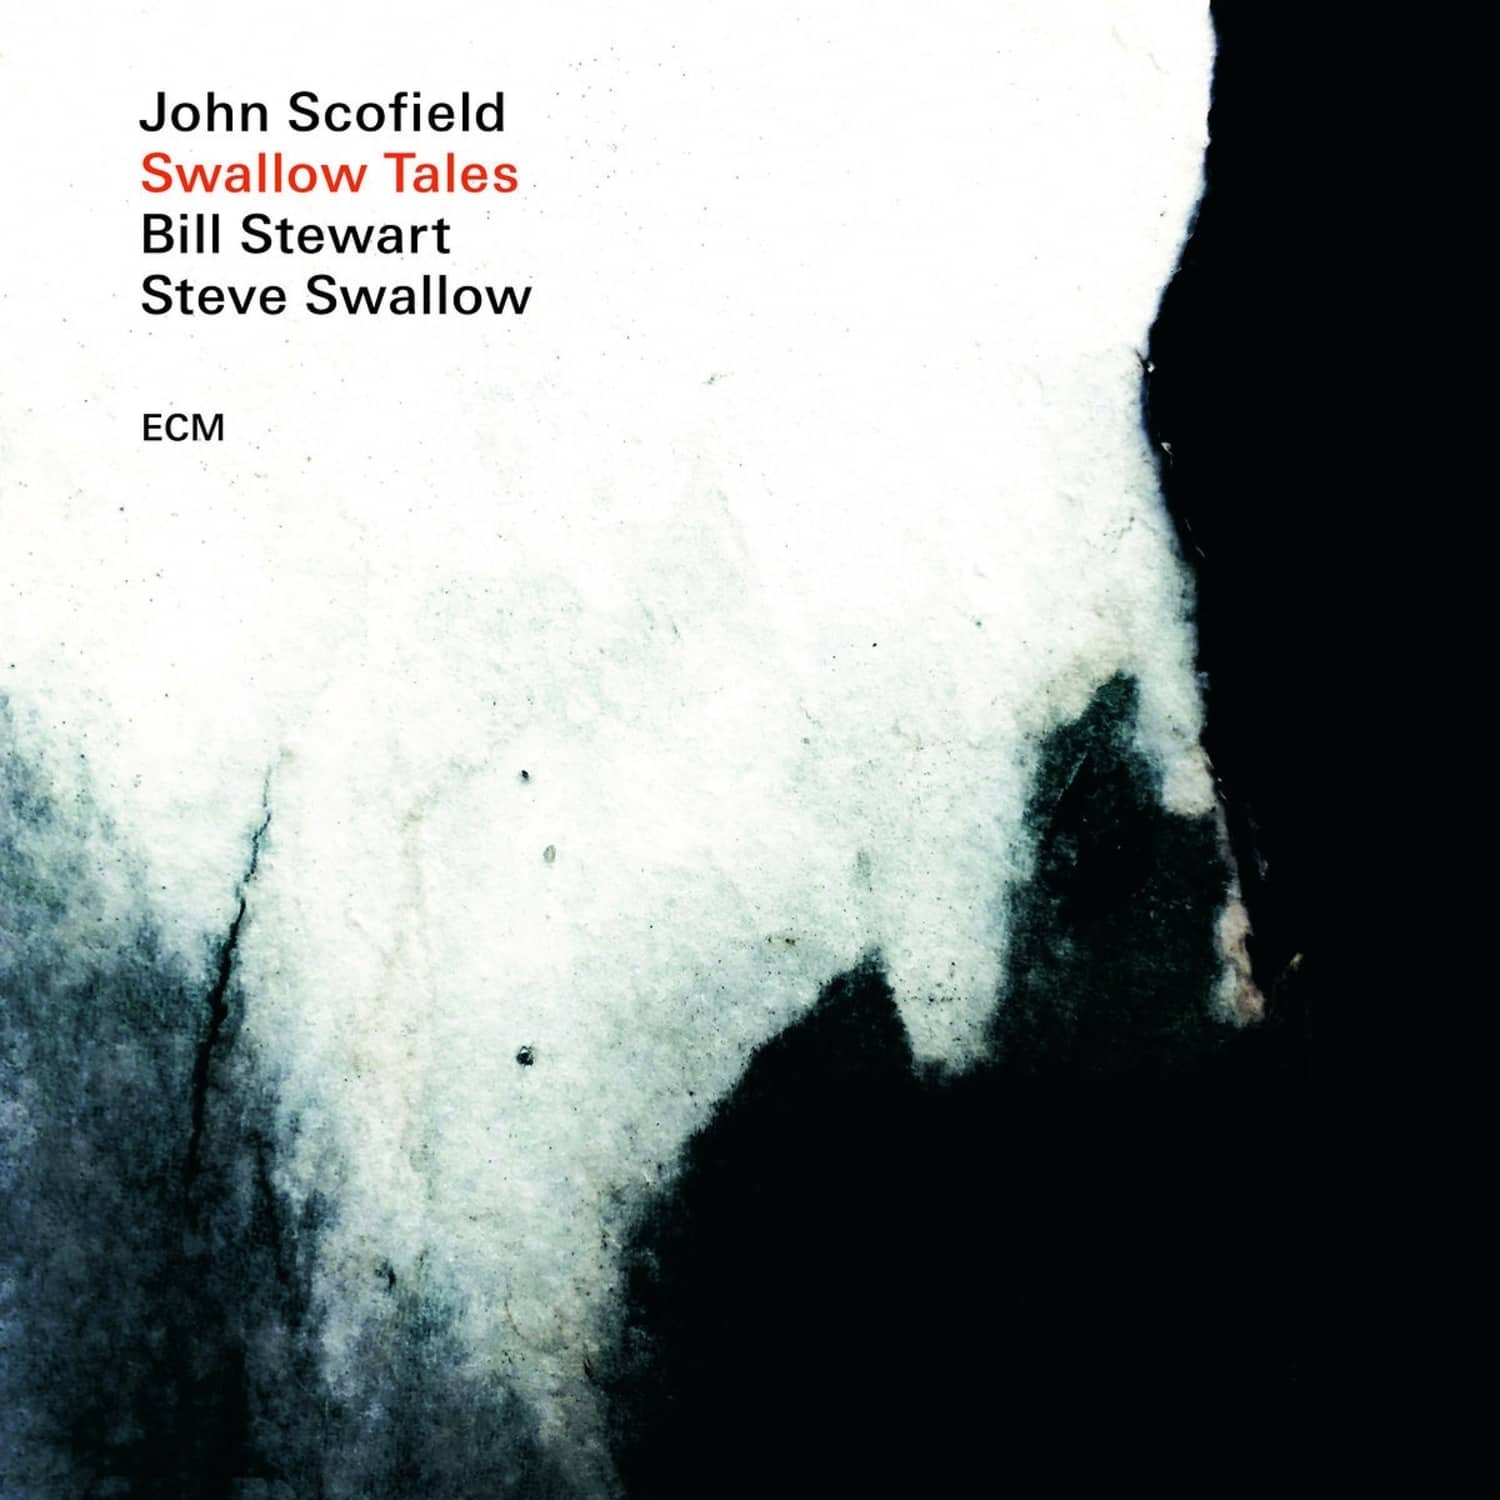 John Scofield / Steve Swallow / Bill Stewart - SWALLOW TALES 